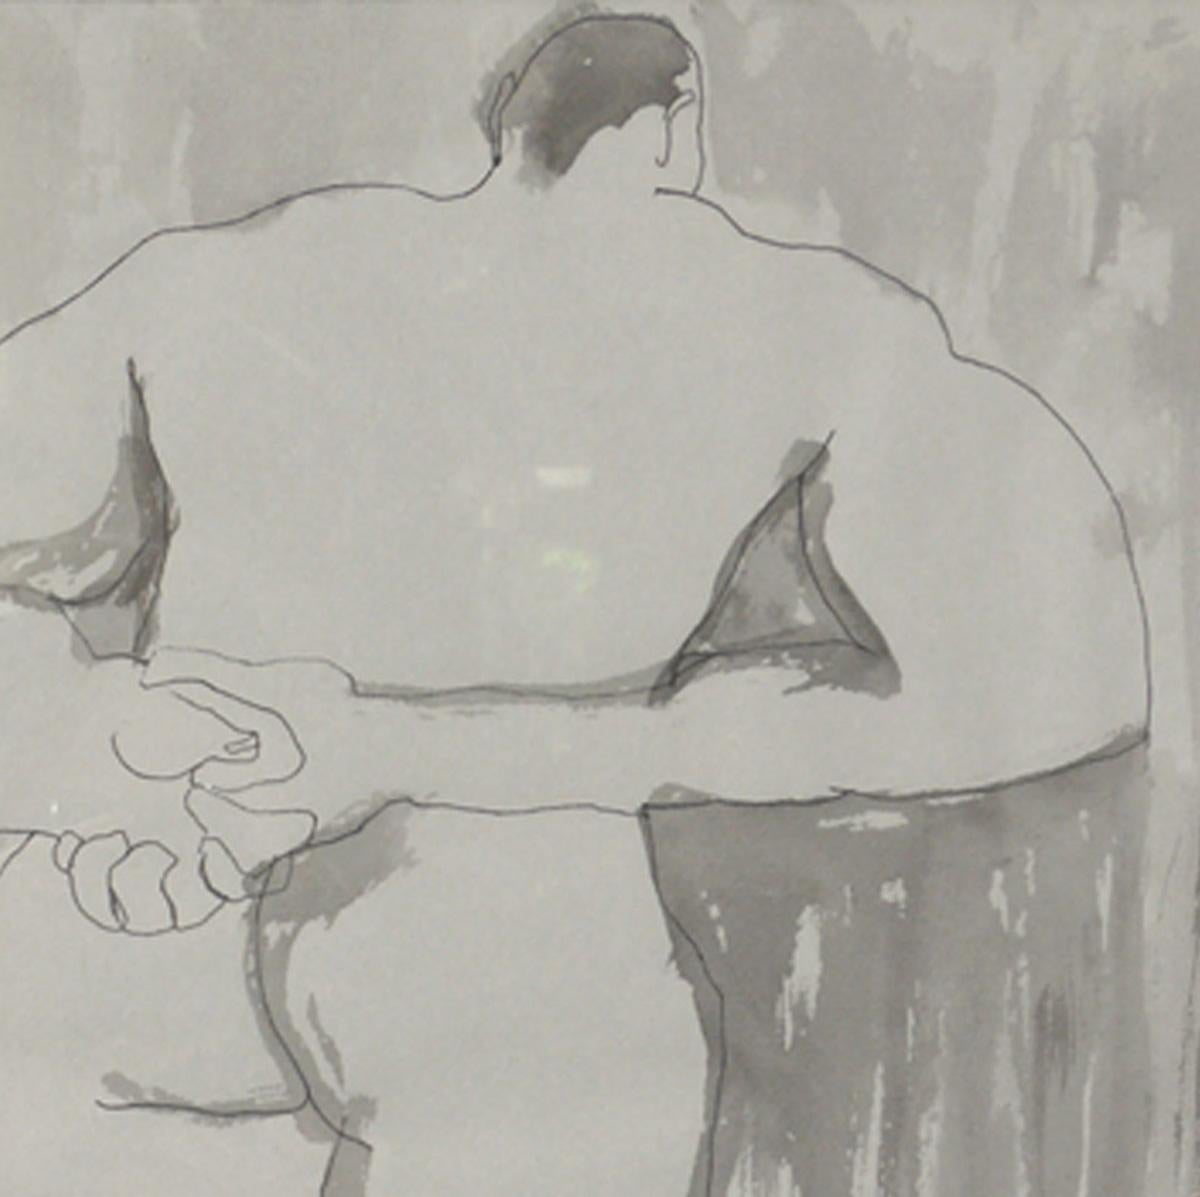 Sélection d'art en noir et blanc, vers les années 1960. De gauche à droite, comme on peut le voir sur la première photo, il s'agit de : 
1) Aquarelle d'un homme nu. Il mesure 19